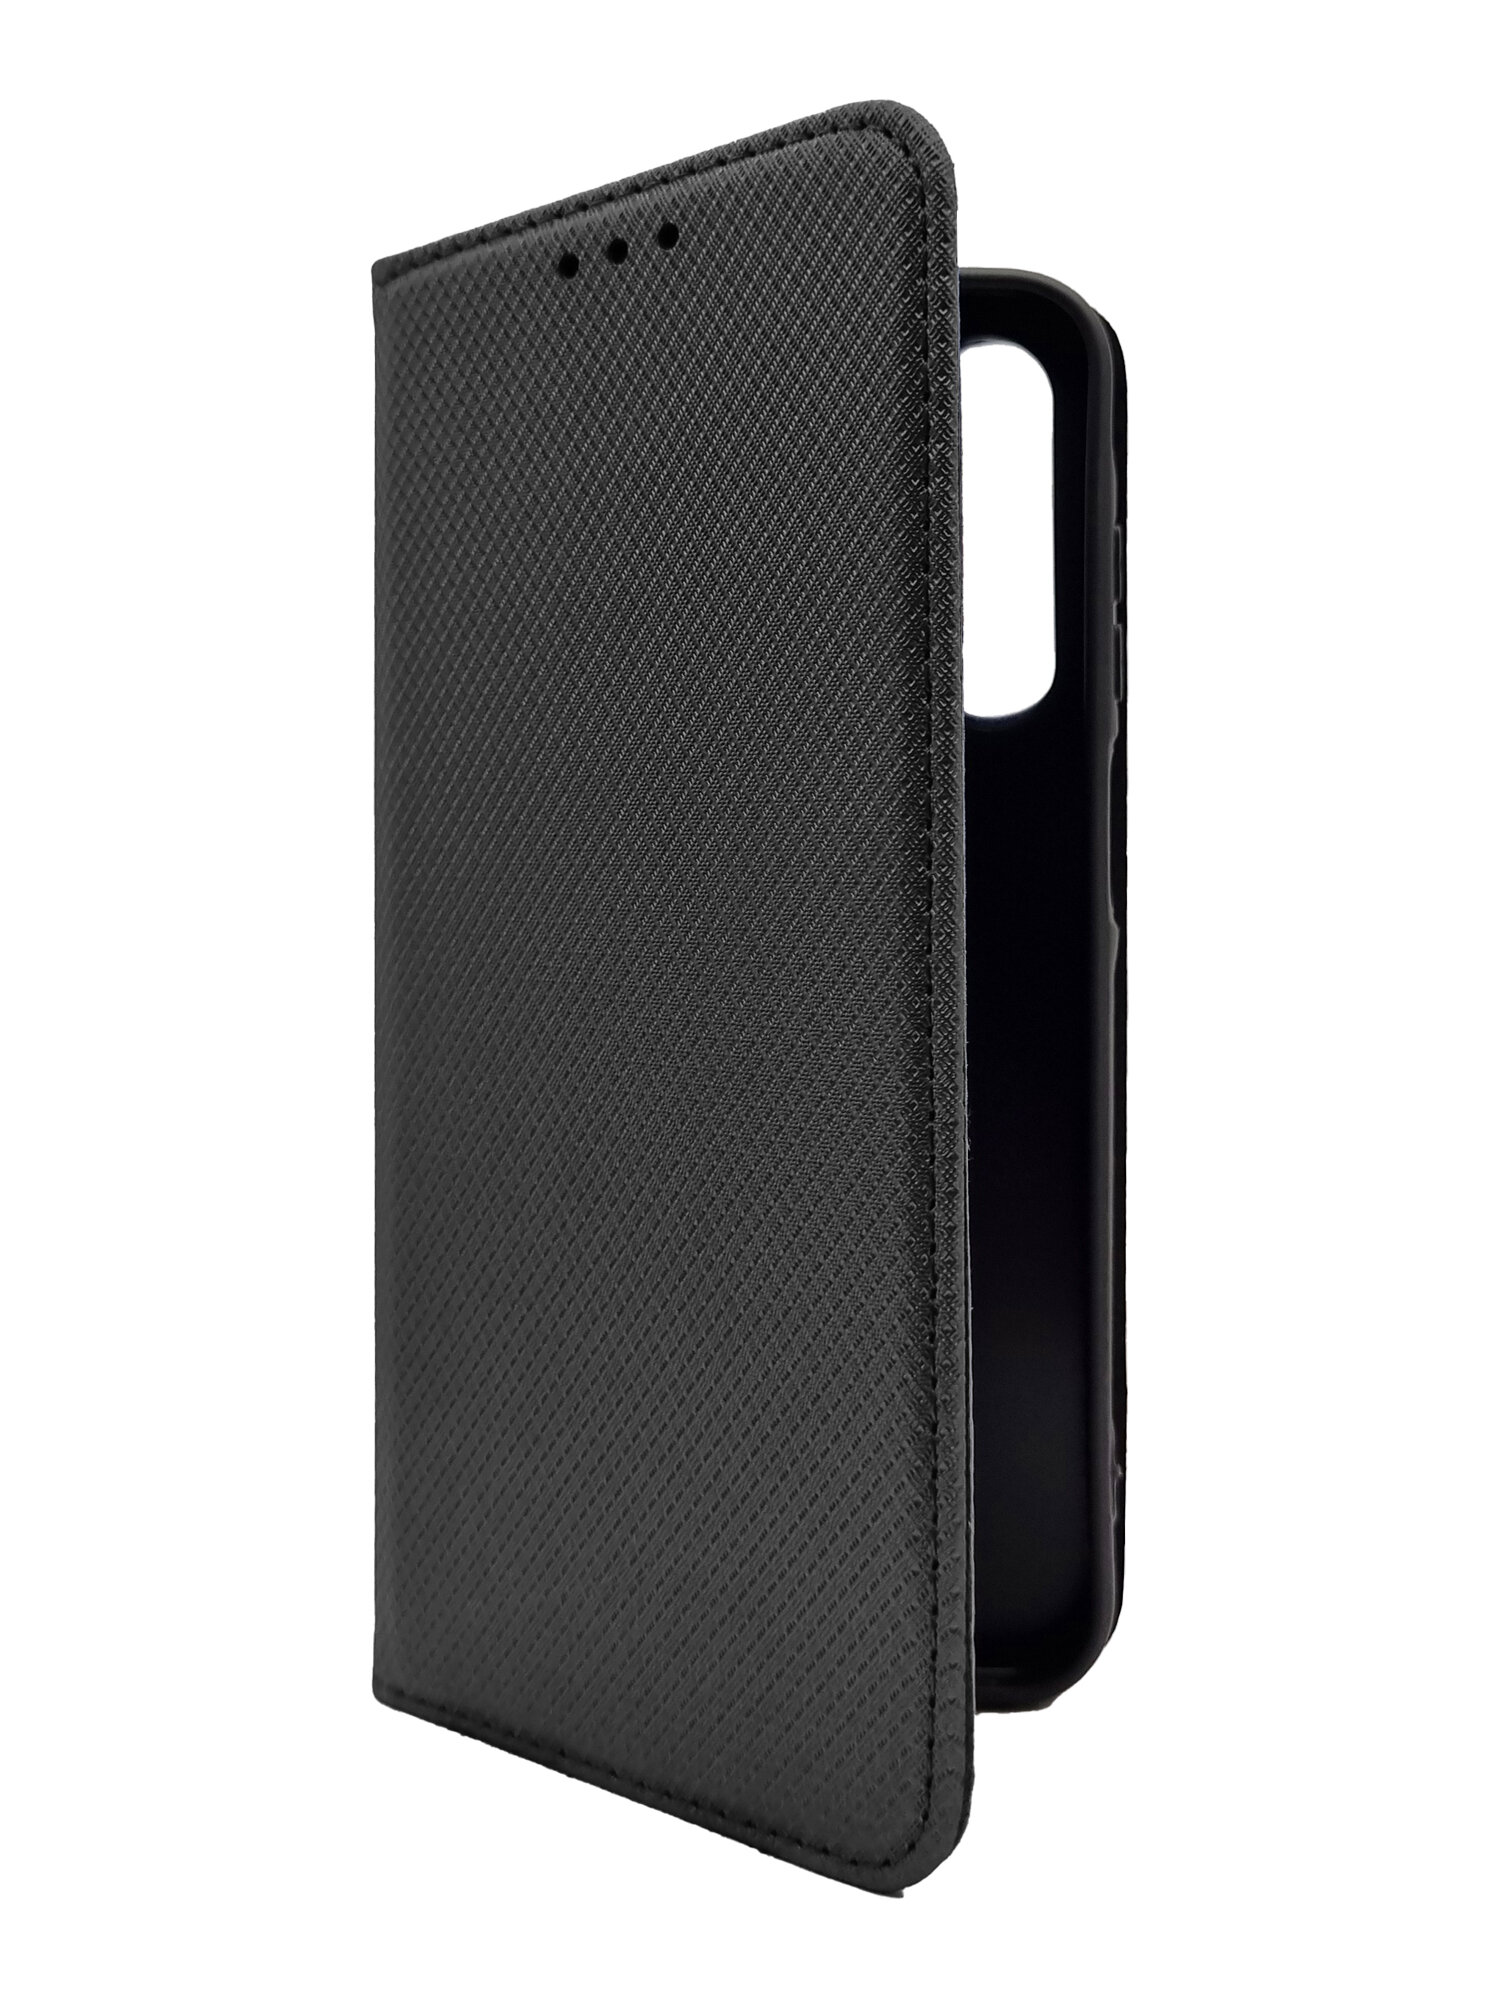 Чехол на Samsung Galaxy A55 (Самсунг Галакси А55) черный книжка плетёнка с функцией подставки с отделением для карт и магнитами Fold Case, Miuko